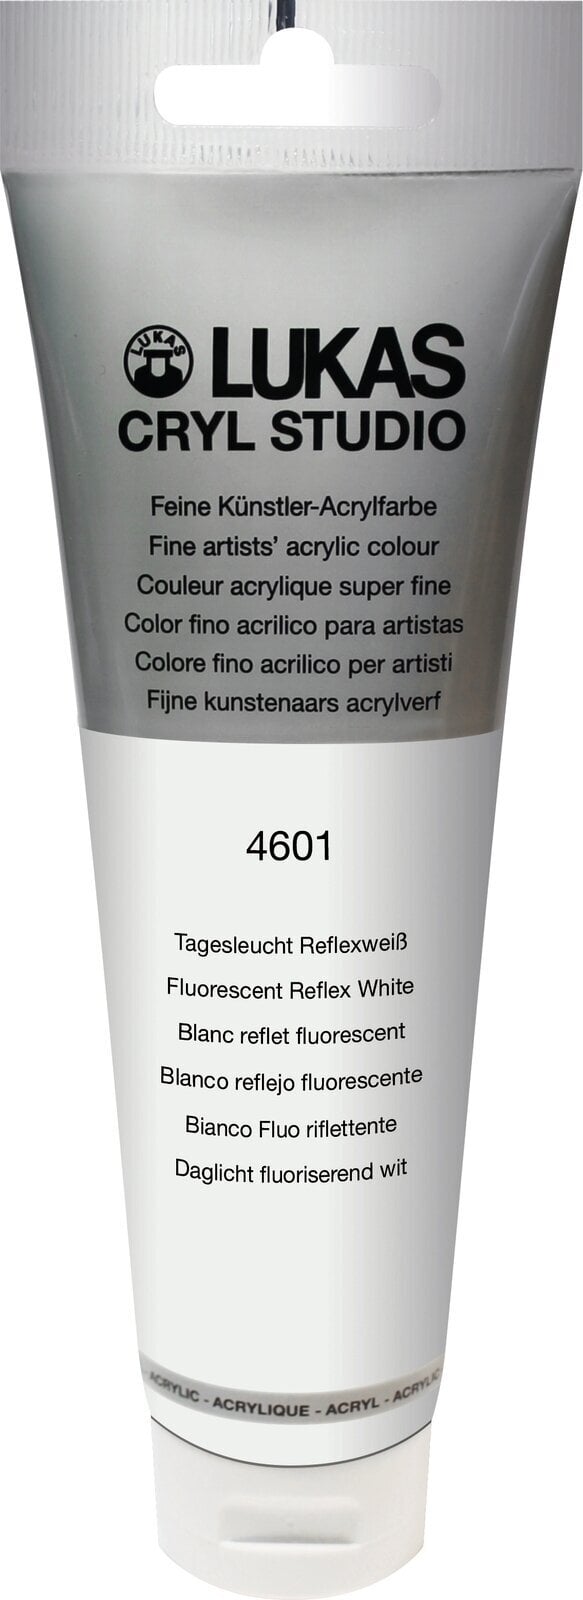 Akrylová barva Lukas Cryl Studio Akrylová barva 125 ml Flourescent Reflex White